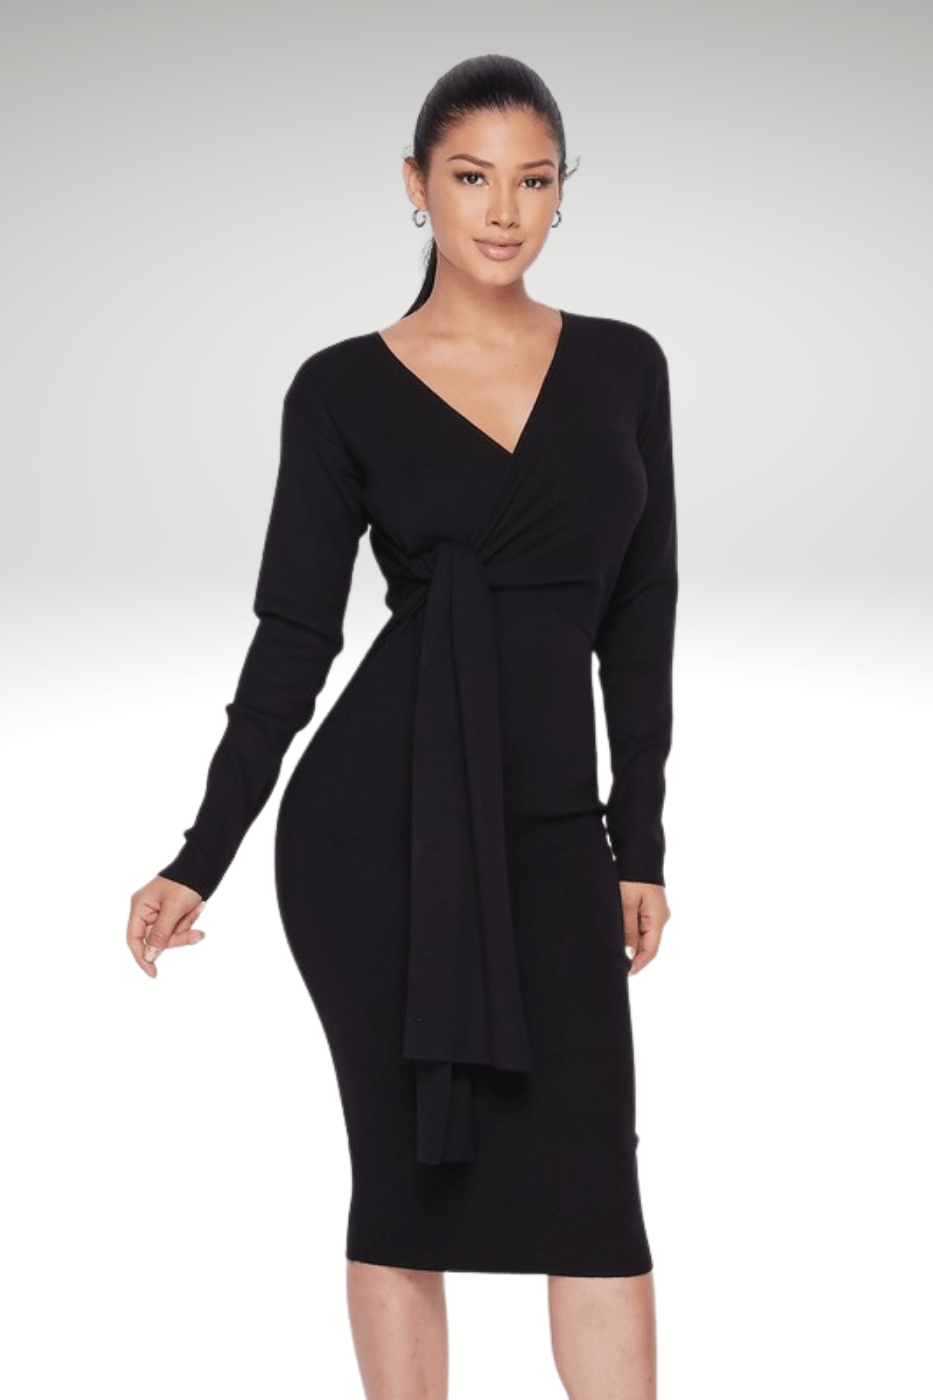 Luxuriance Style Boutique Dresses Black Wrap Tie | Dress